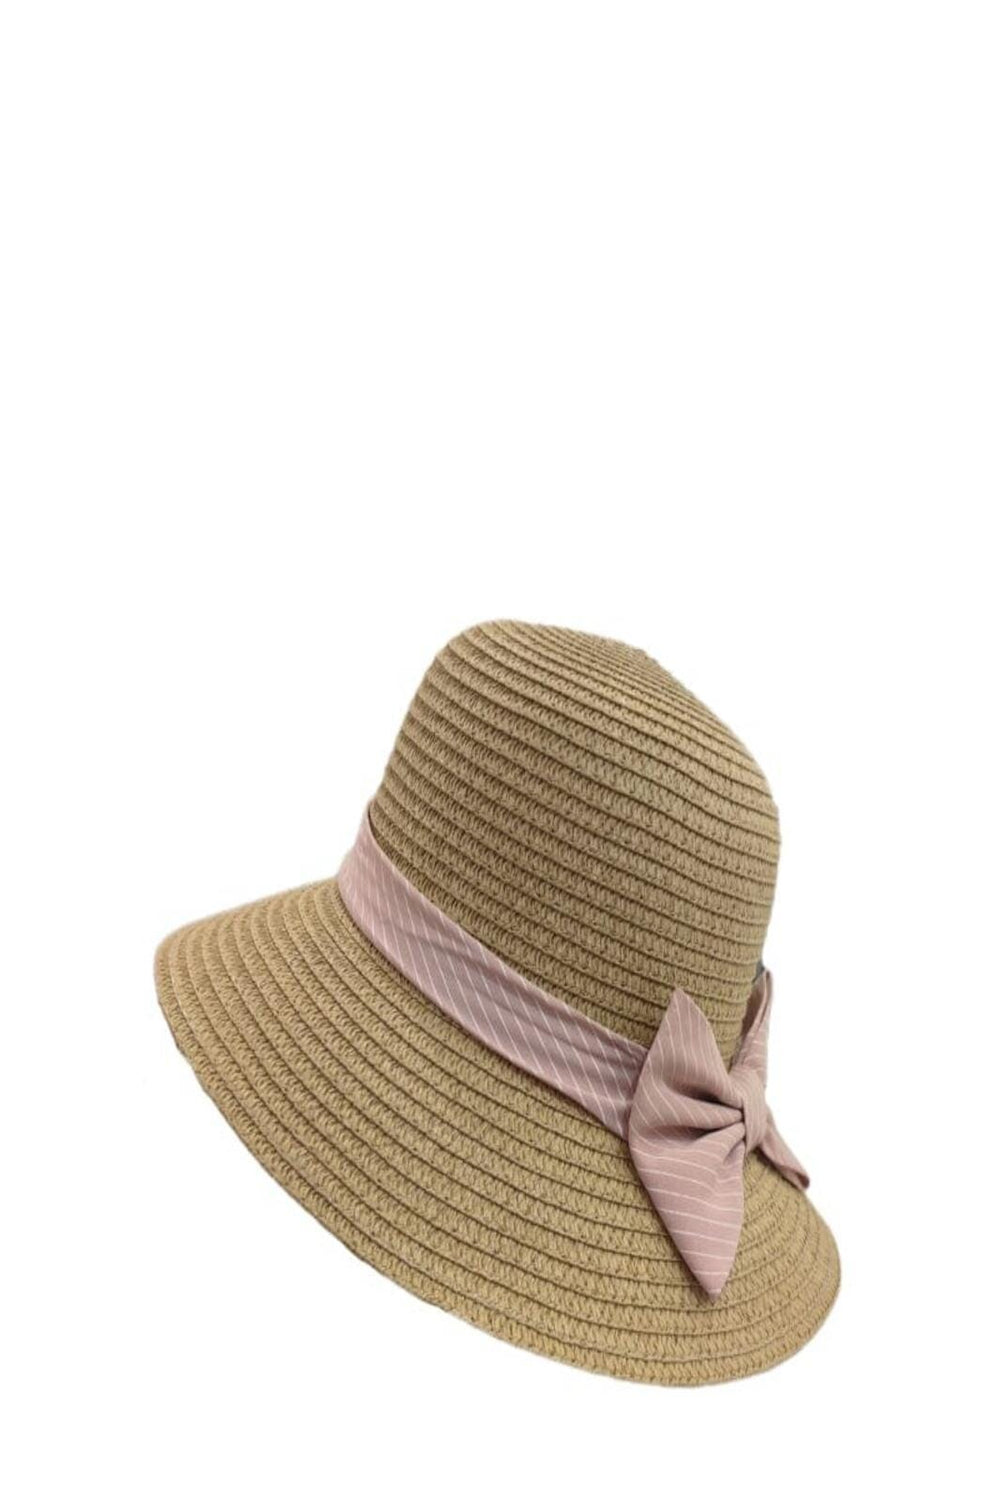 Anobel Copenhagen - Straw Hat With Striped Bow Tie 3cp2085 - Brown Hatte 